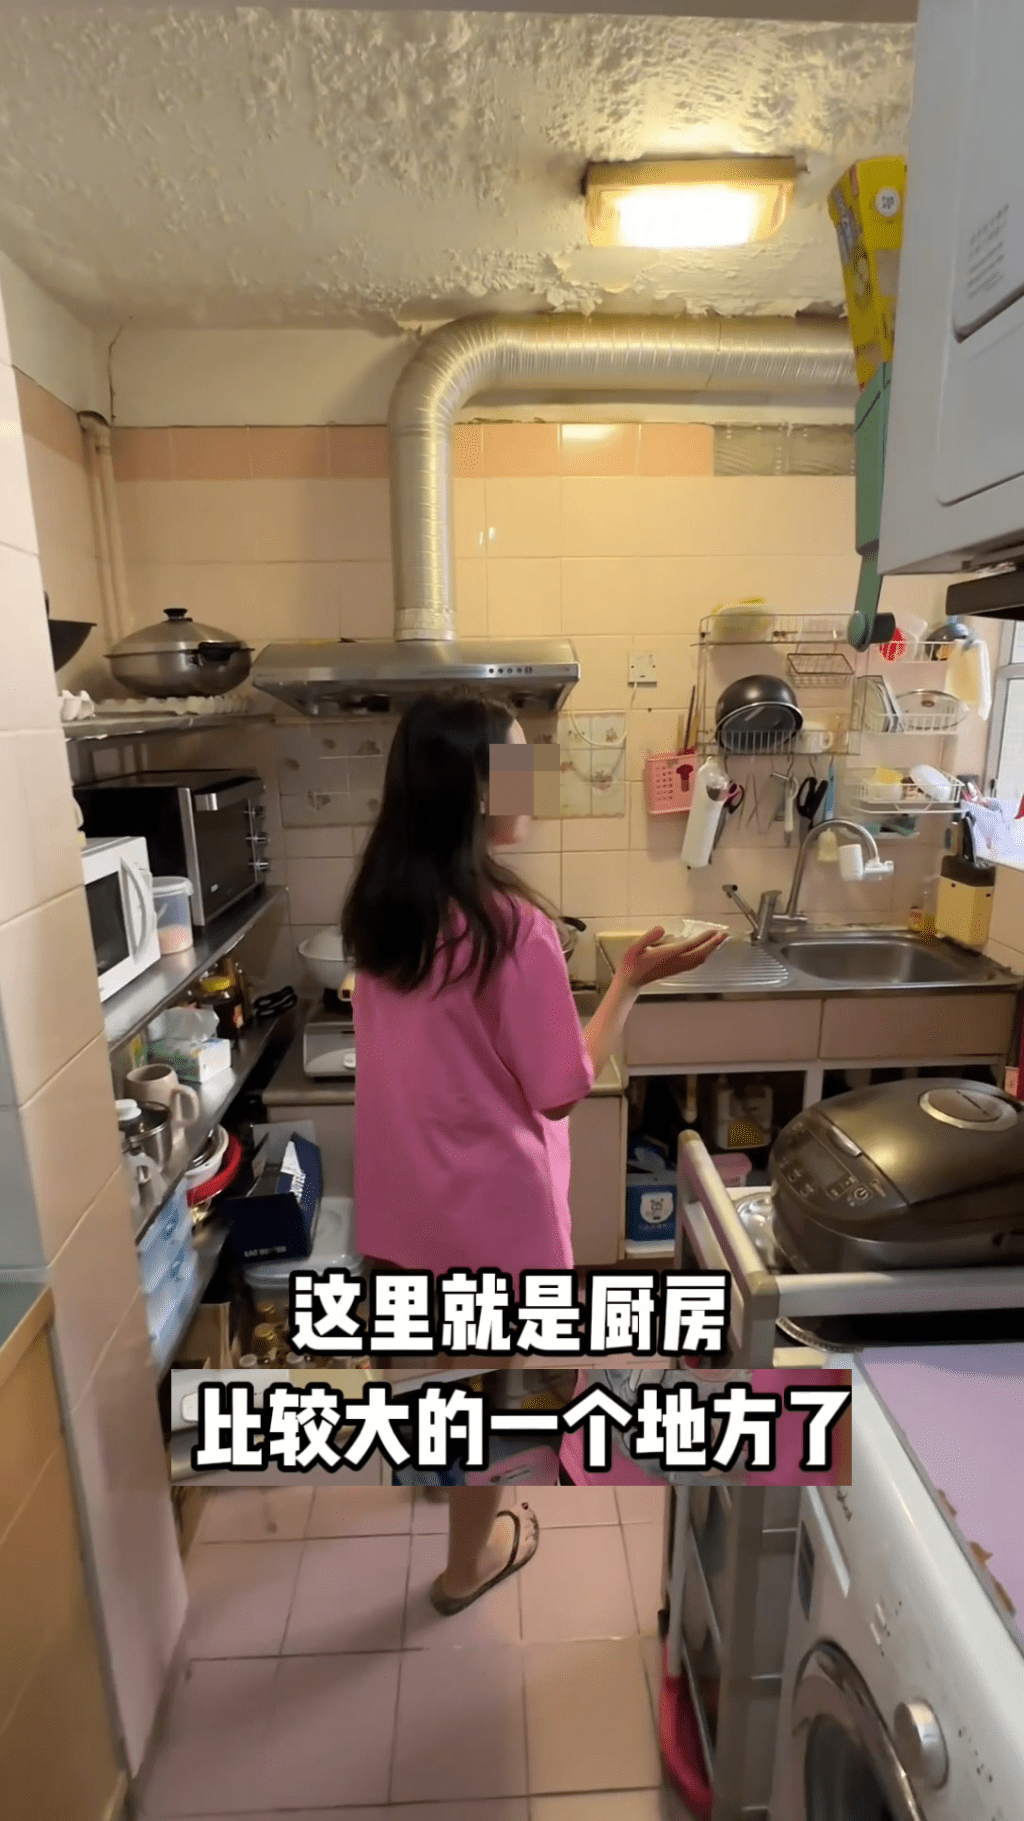 她介绍家中面积较大的厨房。